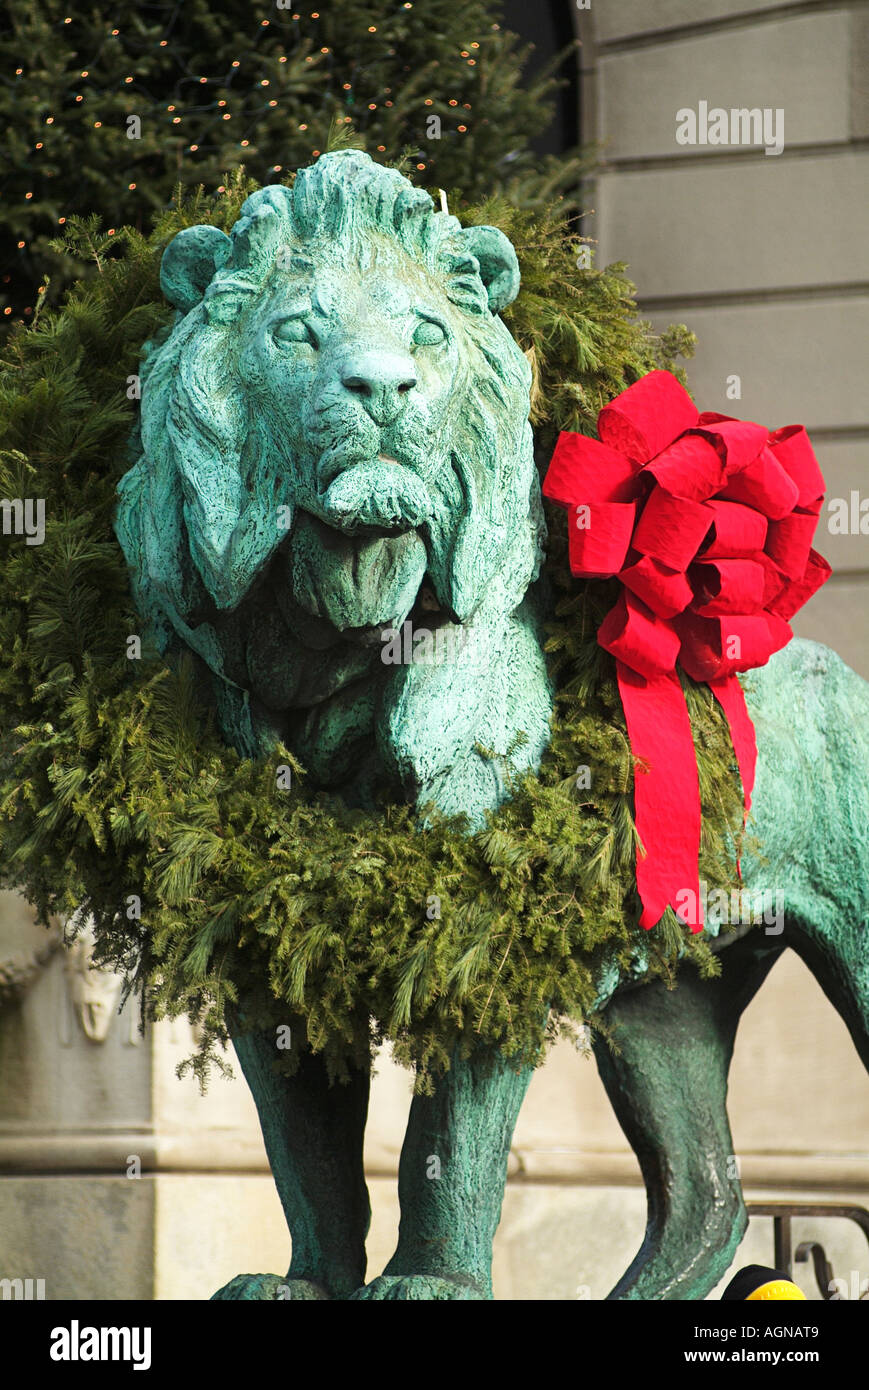 Un león de bronce estatua con guirnaldas fuera del Instituto de Arte de Chicago Foto de stock